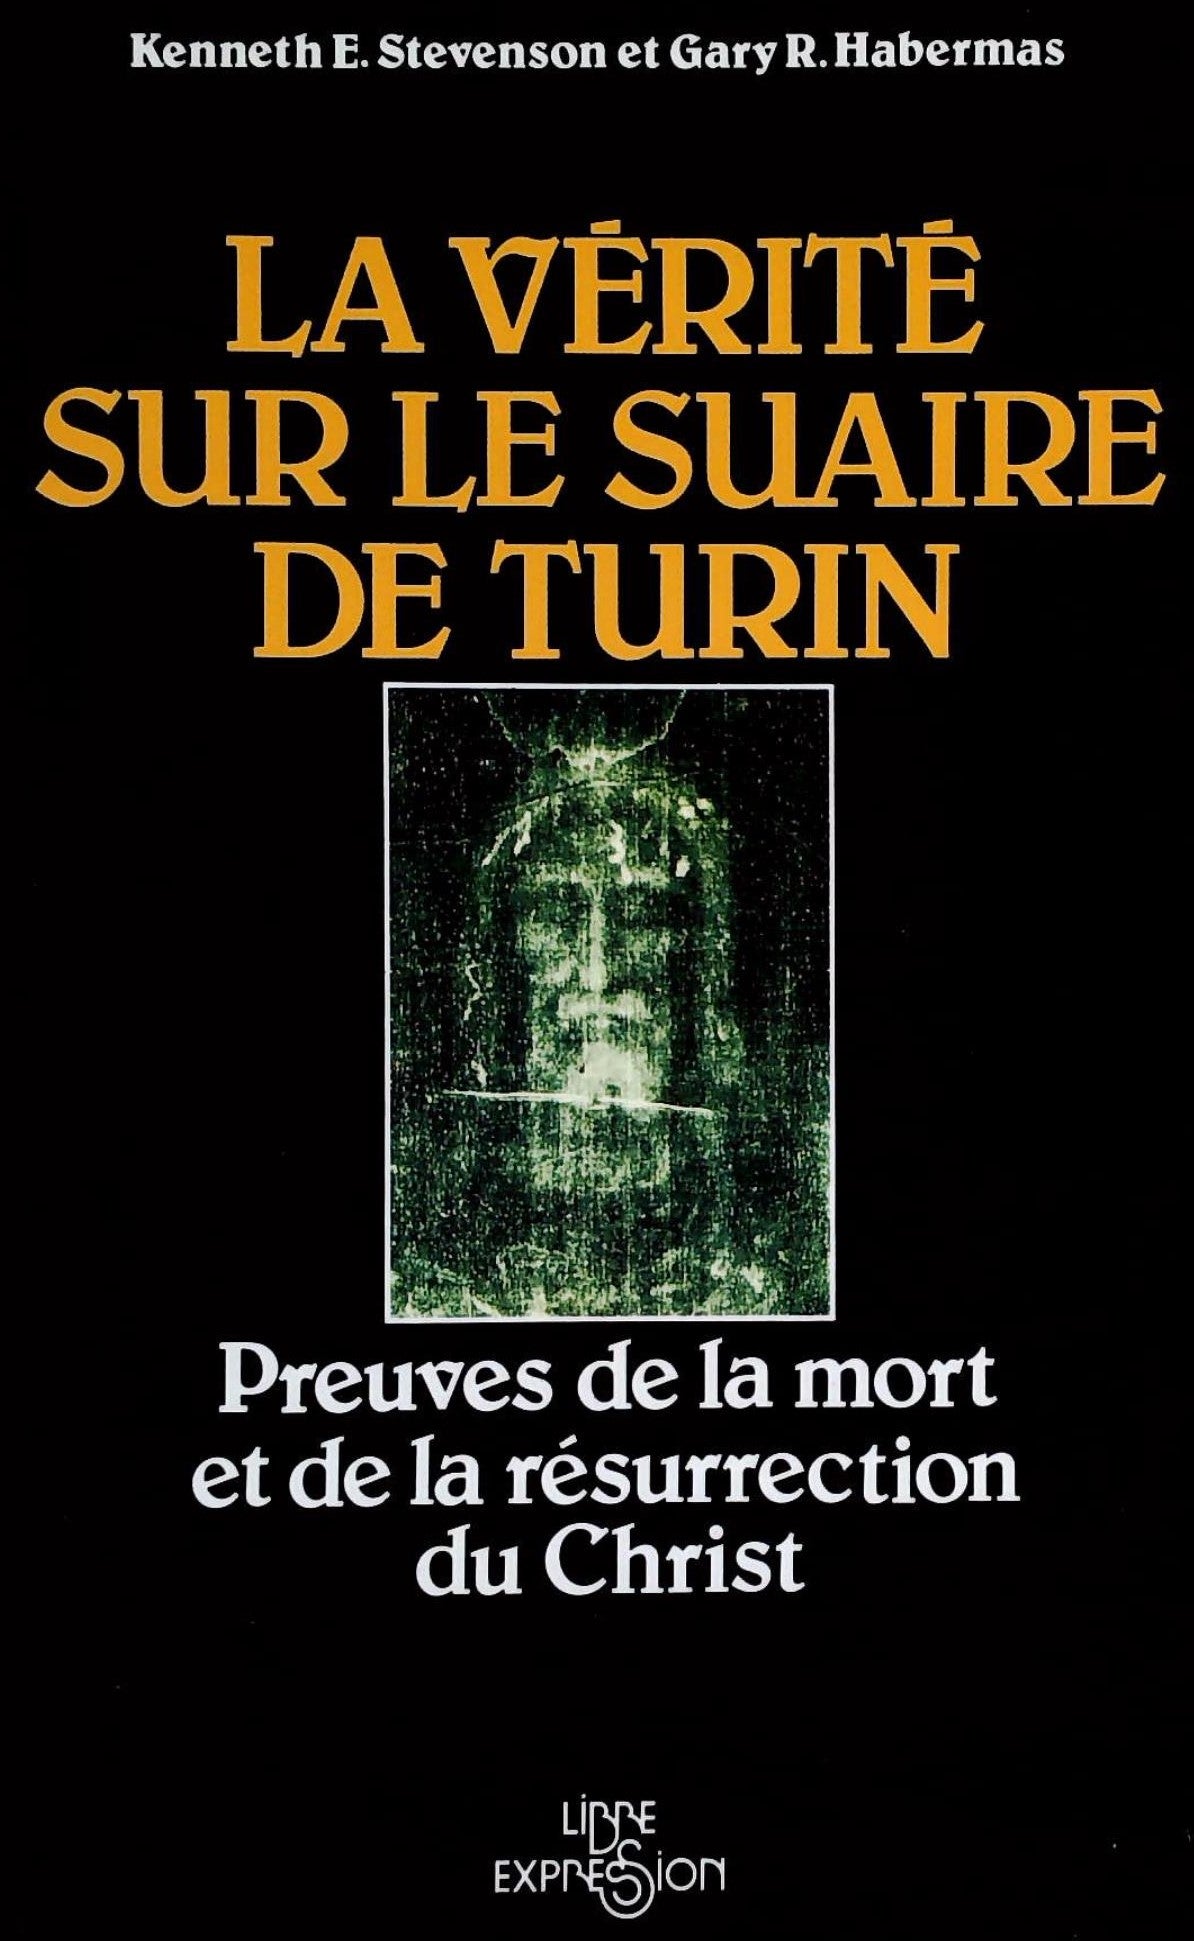 Livre ISBN 289111101X La vérité sur le suaire de turin: Preuves de la mort et de la résurrection du Christ (Kenneth E. Stevenson)